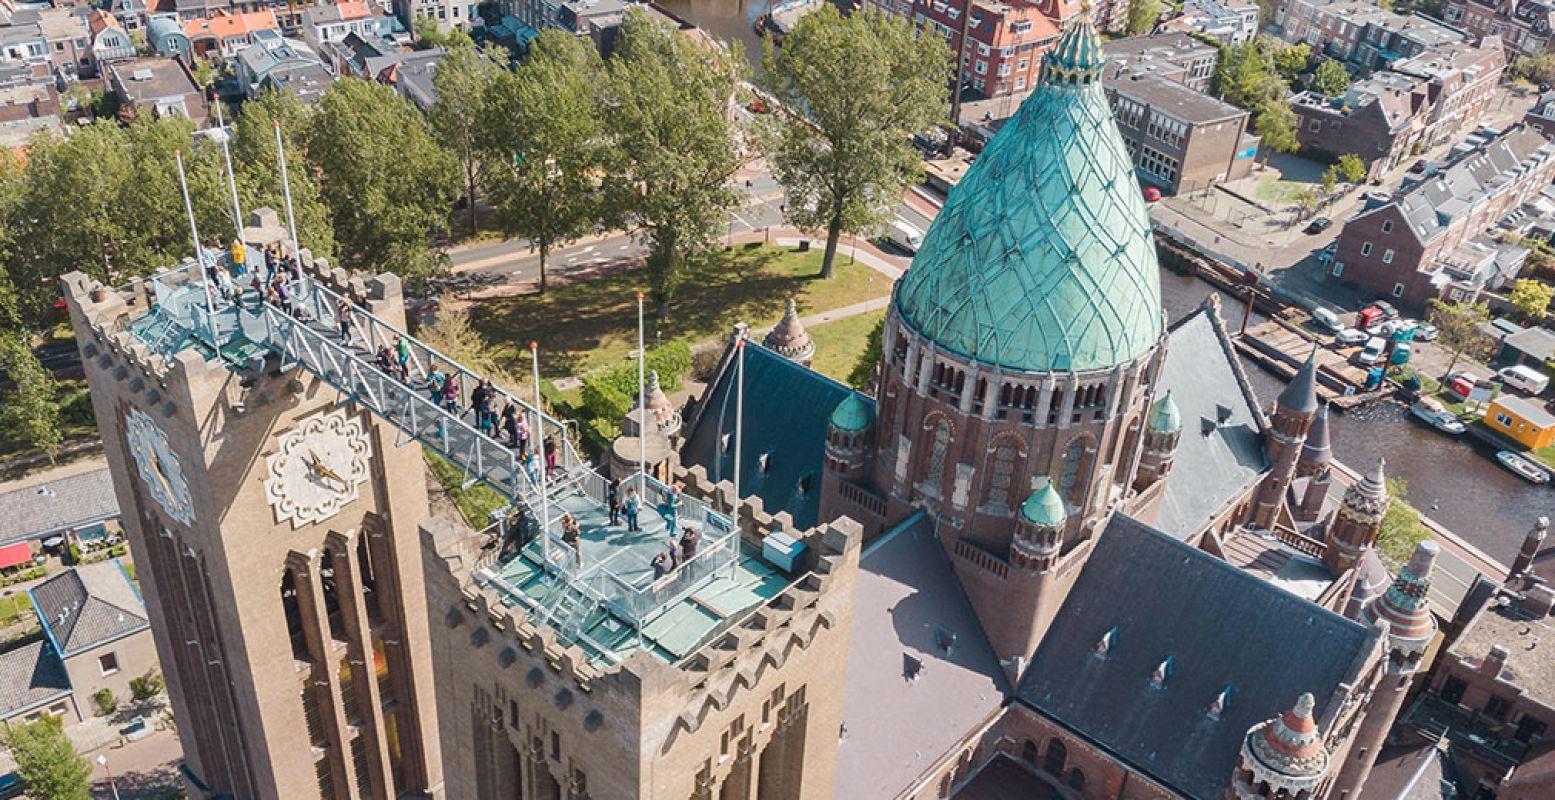 Tot eind juli kun je zestig meter boven Haarlem staan, tussen de torens van de bijzondere Koepel Kathedraal in Haarlem. Foto: Klim naar het licht